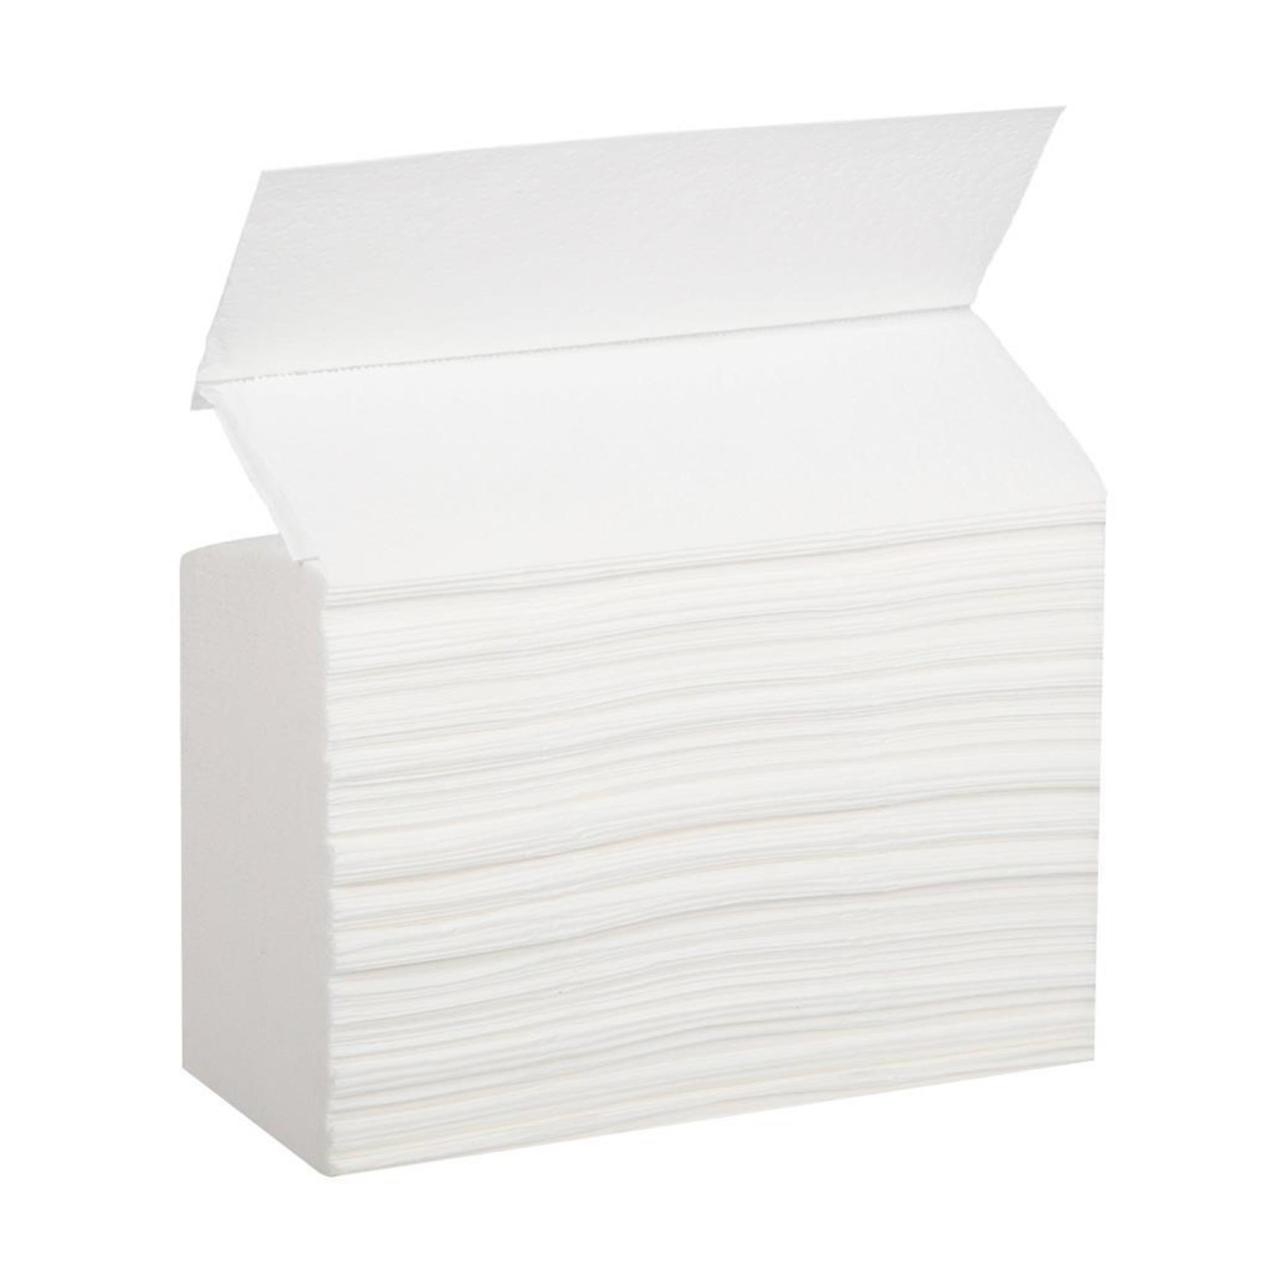 Z полотенца купить. Полотенца z сложения. Бумажные полотенца z укладка. Полотенца бумажные для диспенсеров z-укладка. Бумажные полотенца для диспенсера.